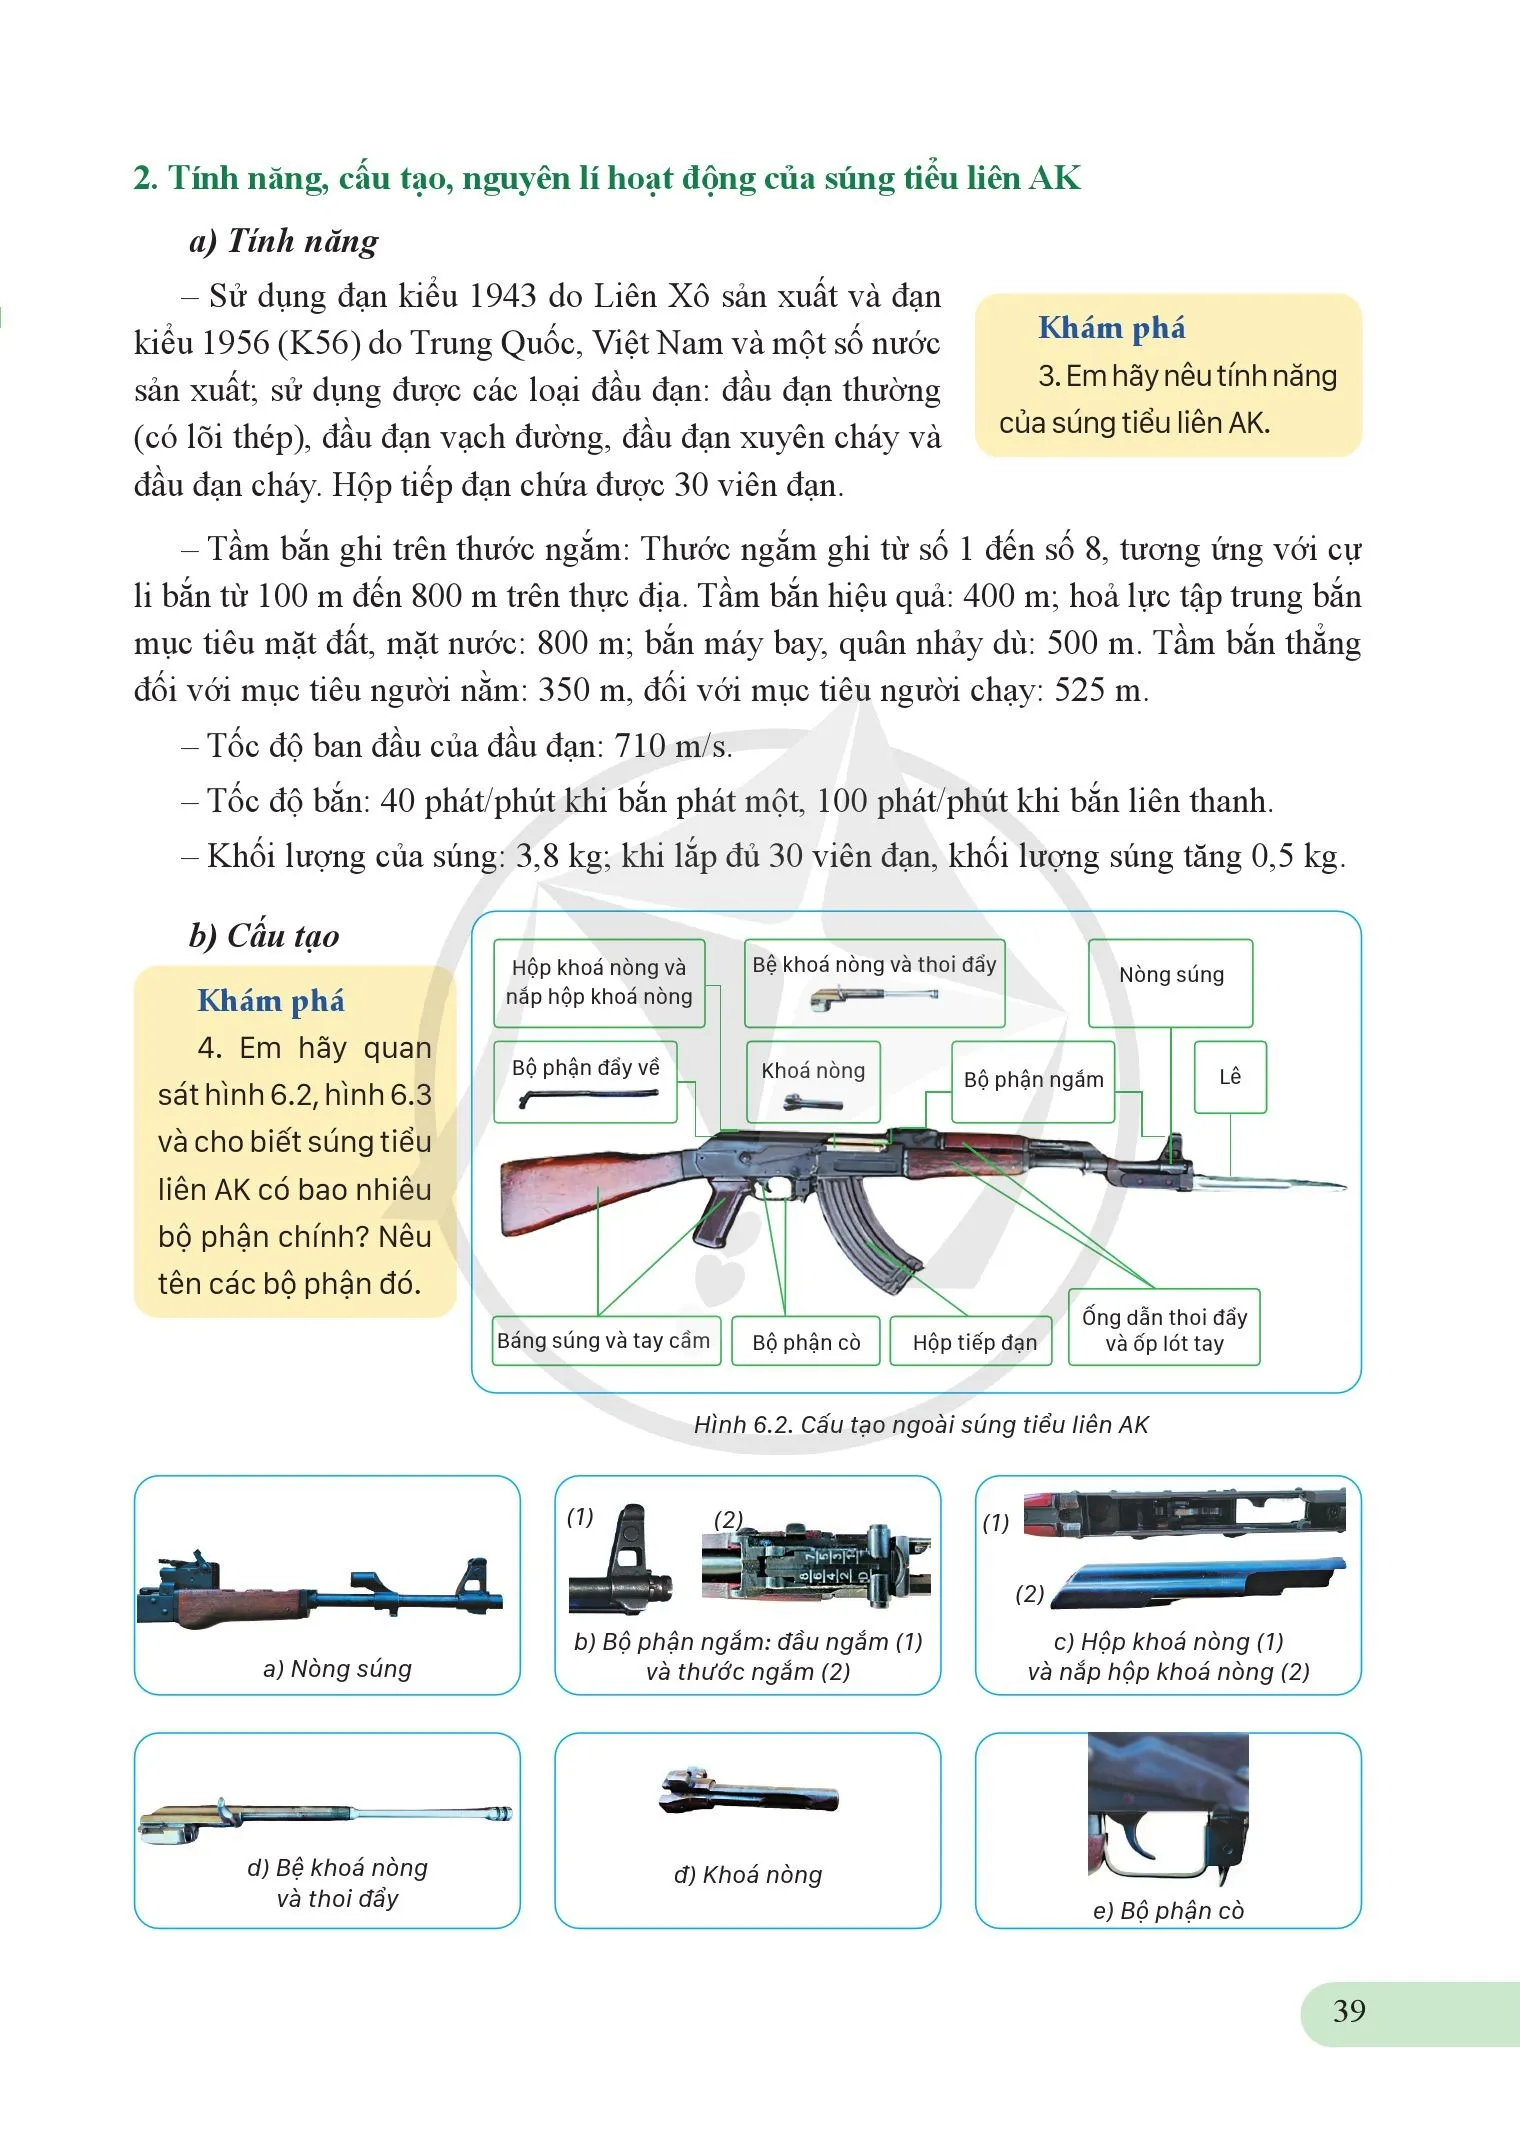 Bài 6. Giới thiệu một số loại súng bộ binh, thuốc nổ, vật cản và vũ khí tự tạo